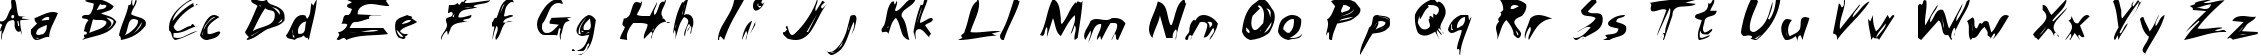 Пример написания английского алфавита шрифтом ChickenScratch AOE